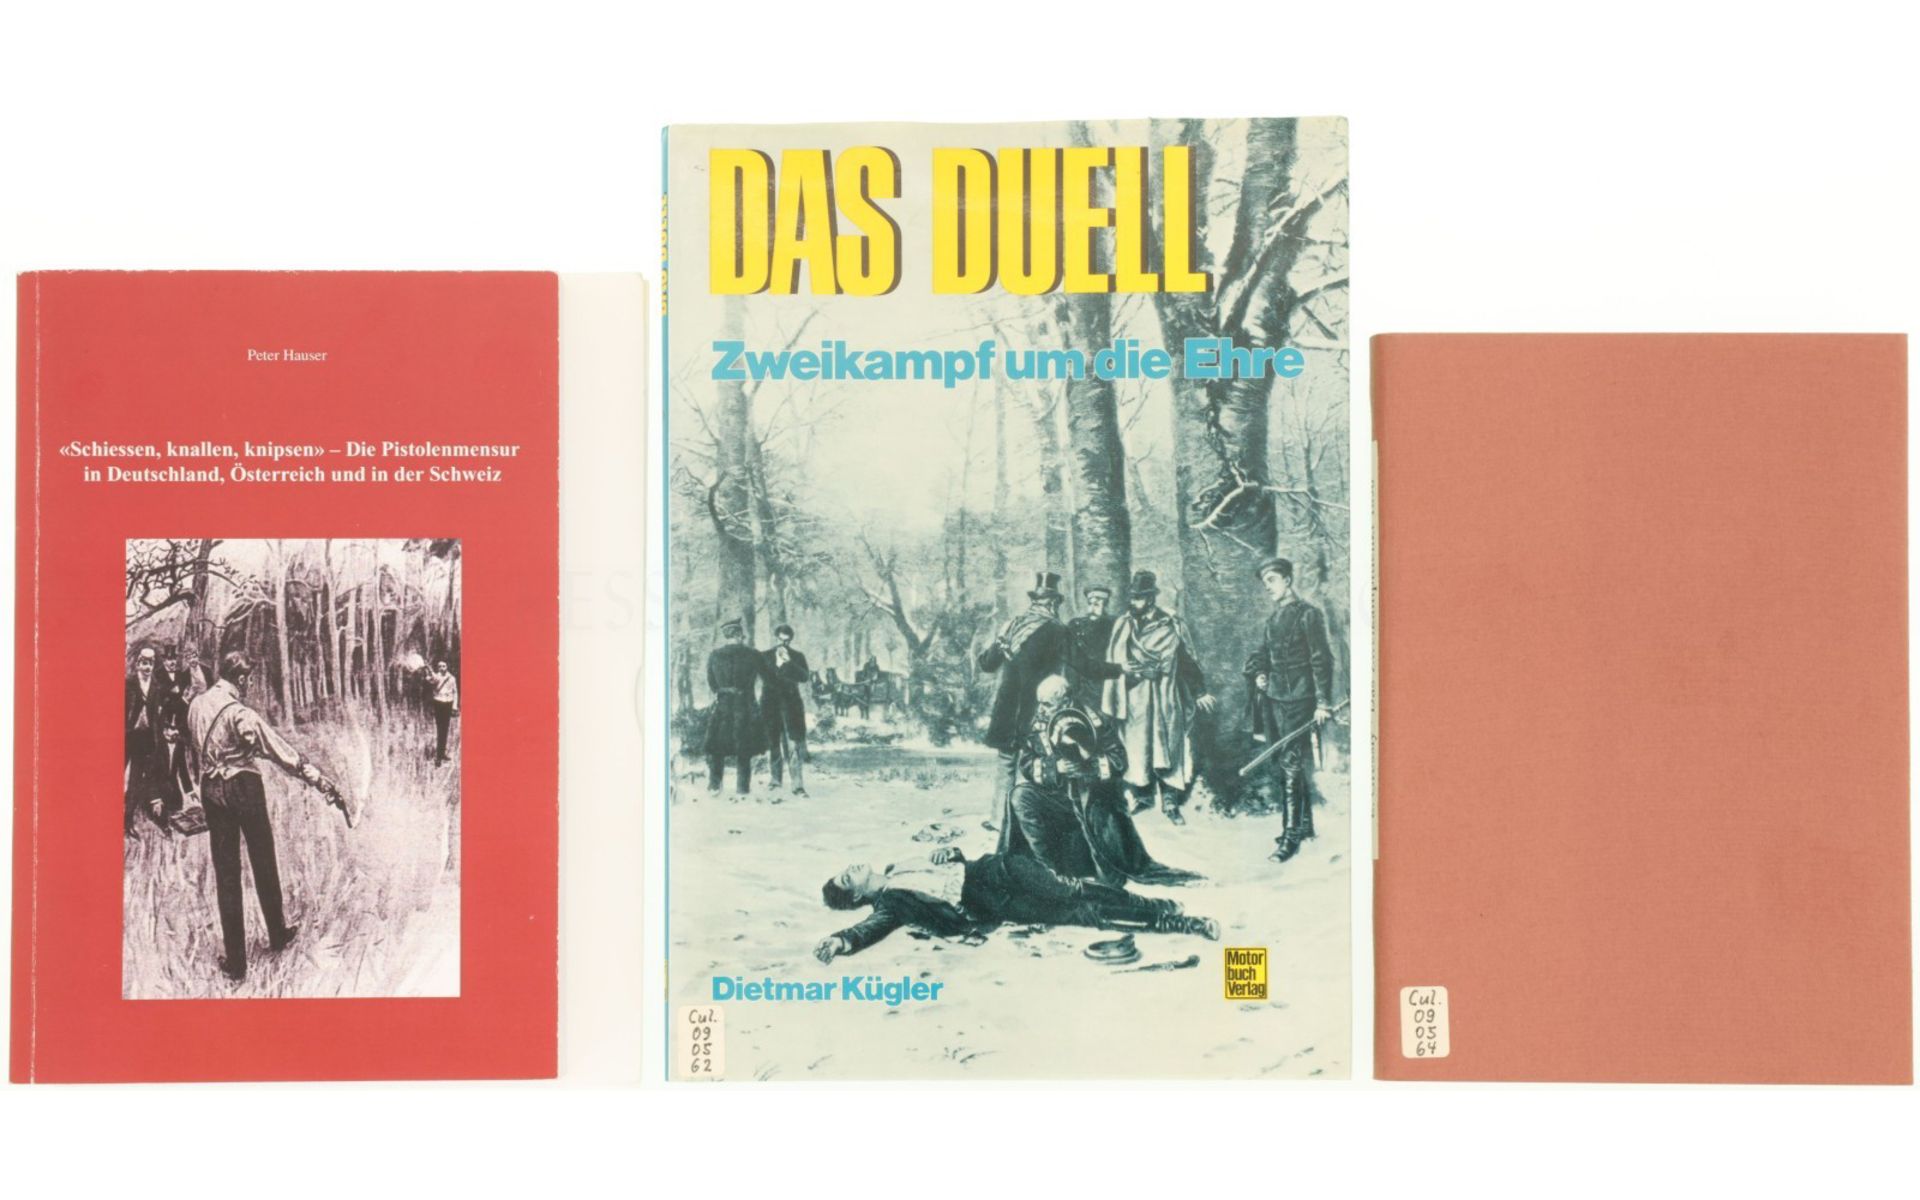 Konvolut von 3 Büchern zum Thema "Duell/Zweikampf"